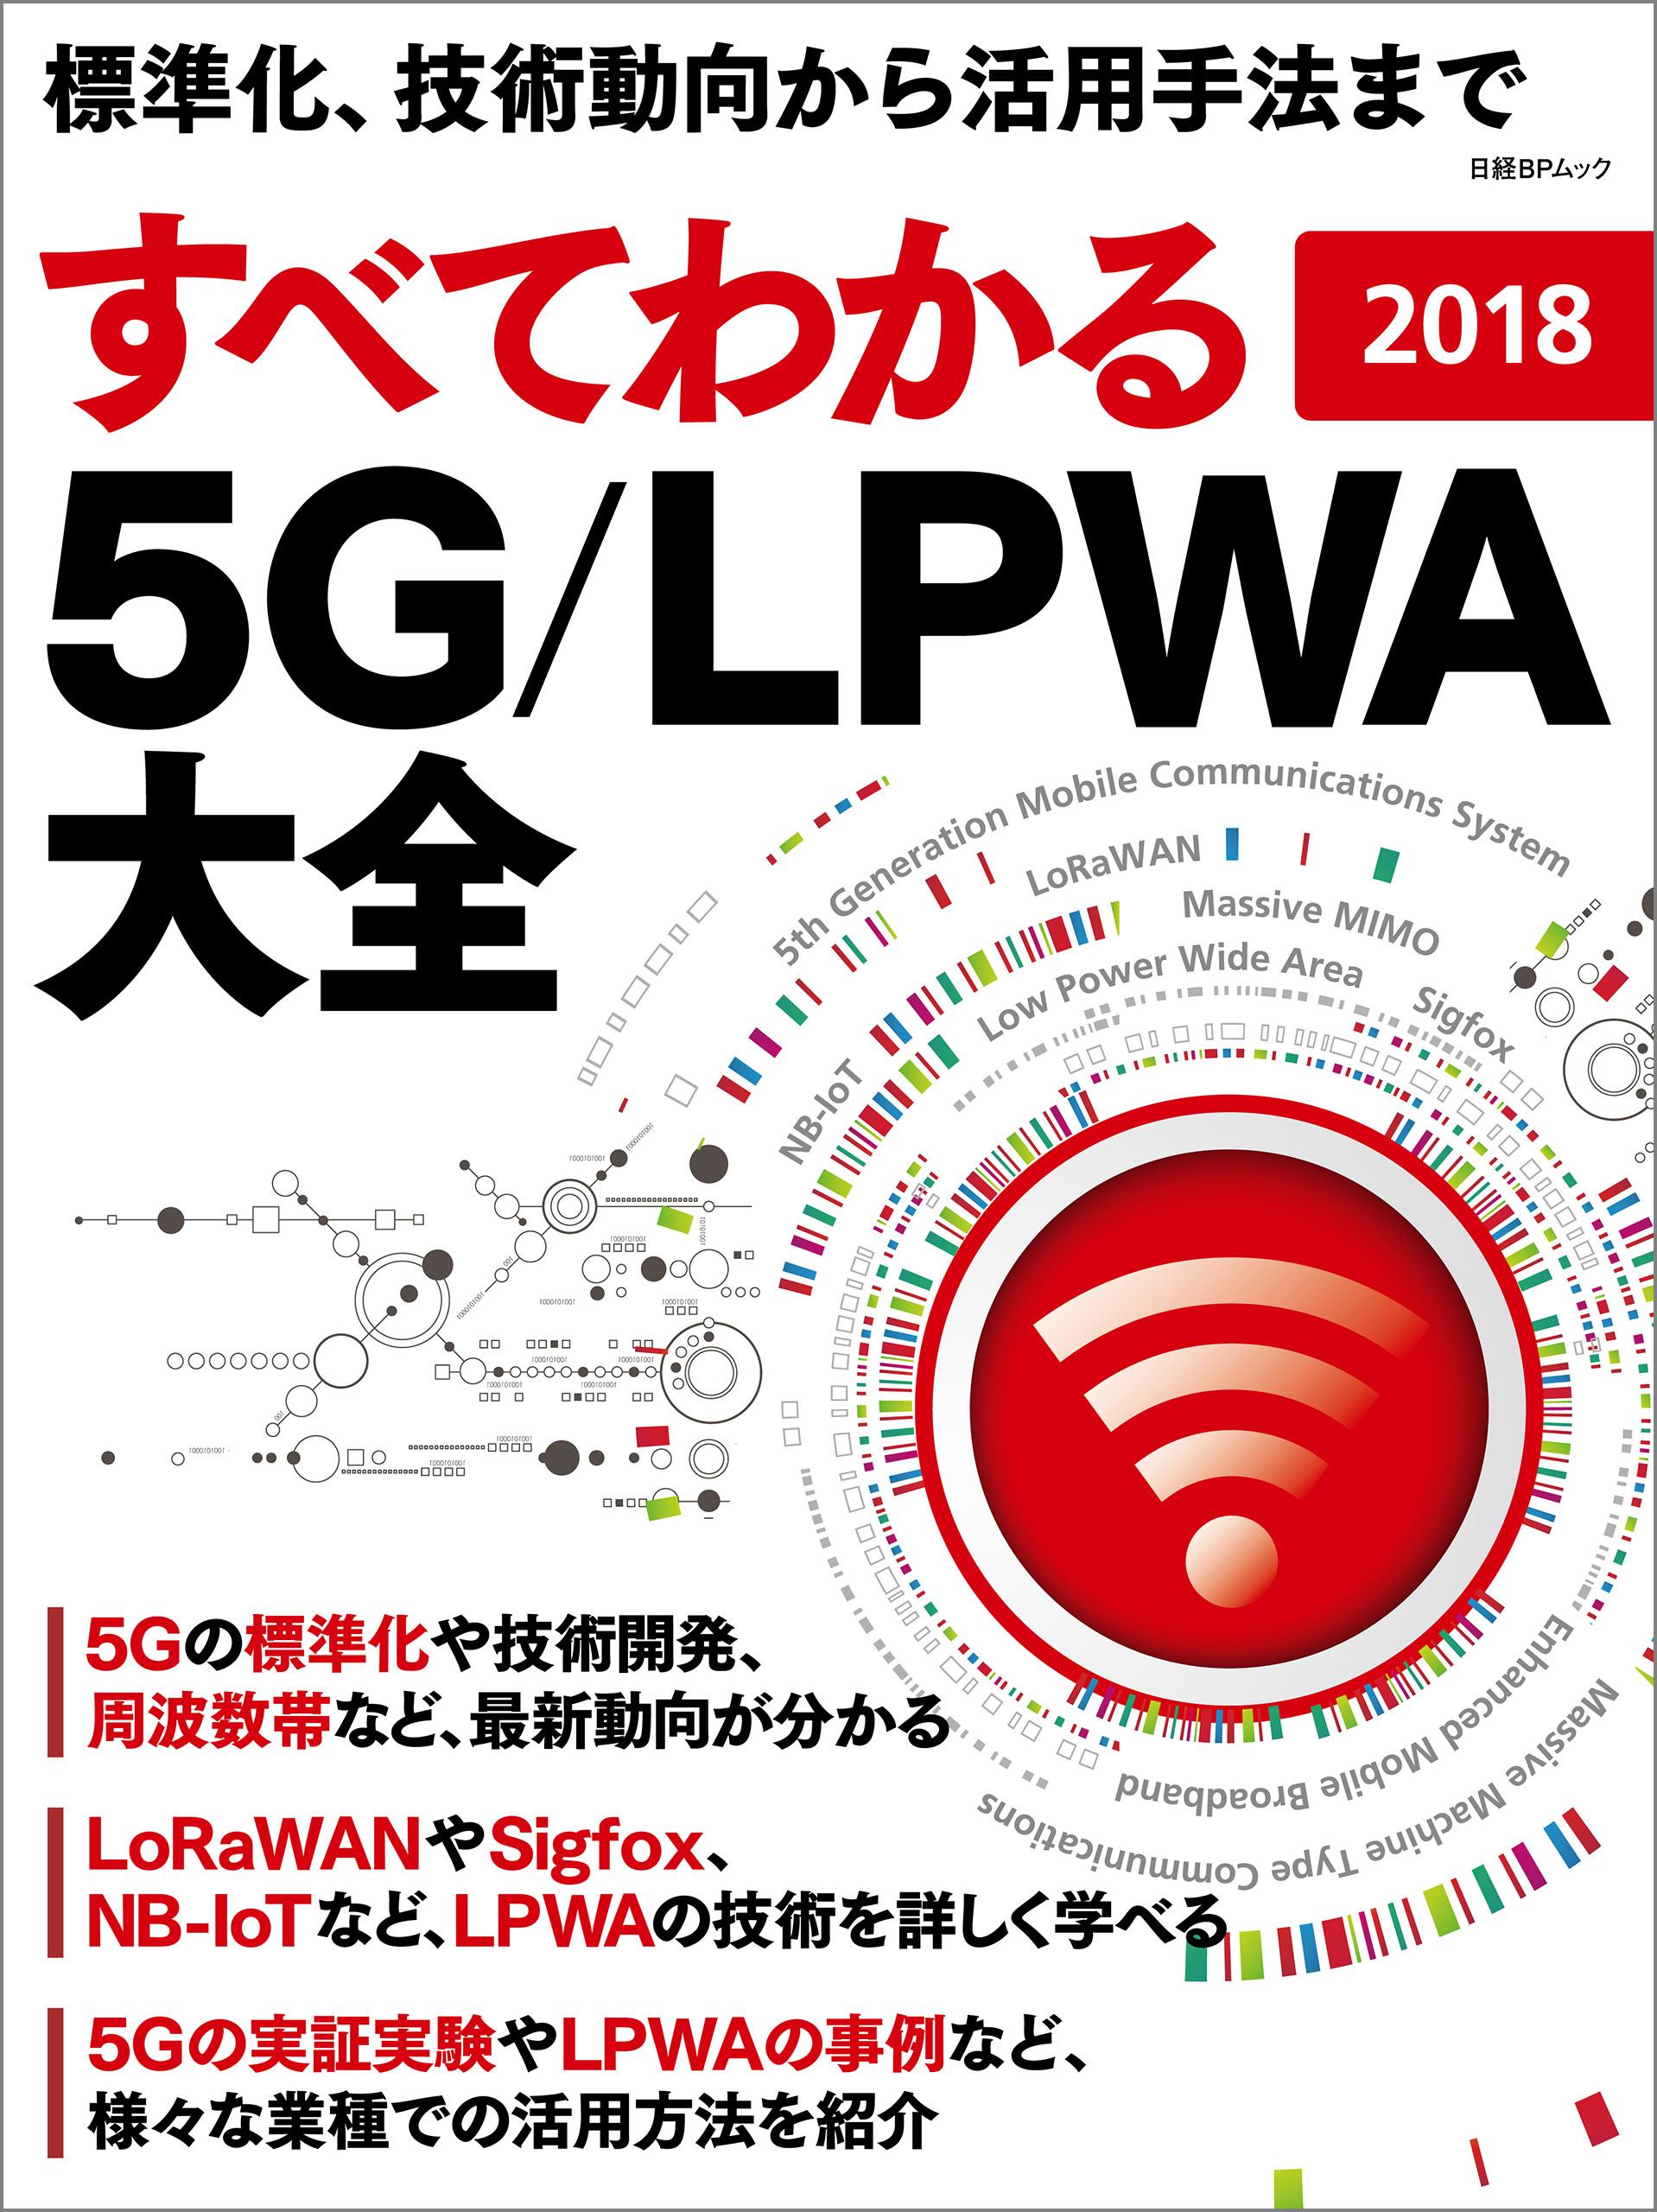 すべてわかる 5G/LPWA大全 2018